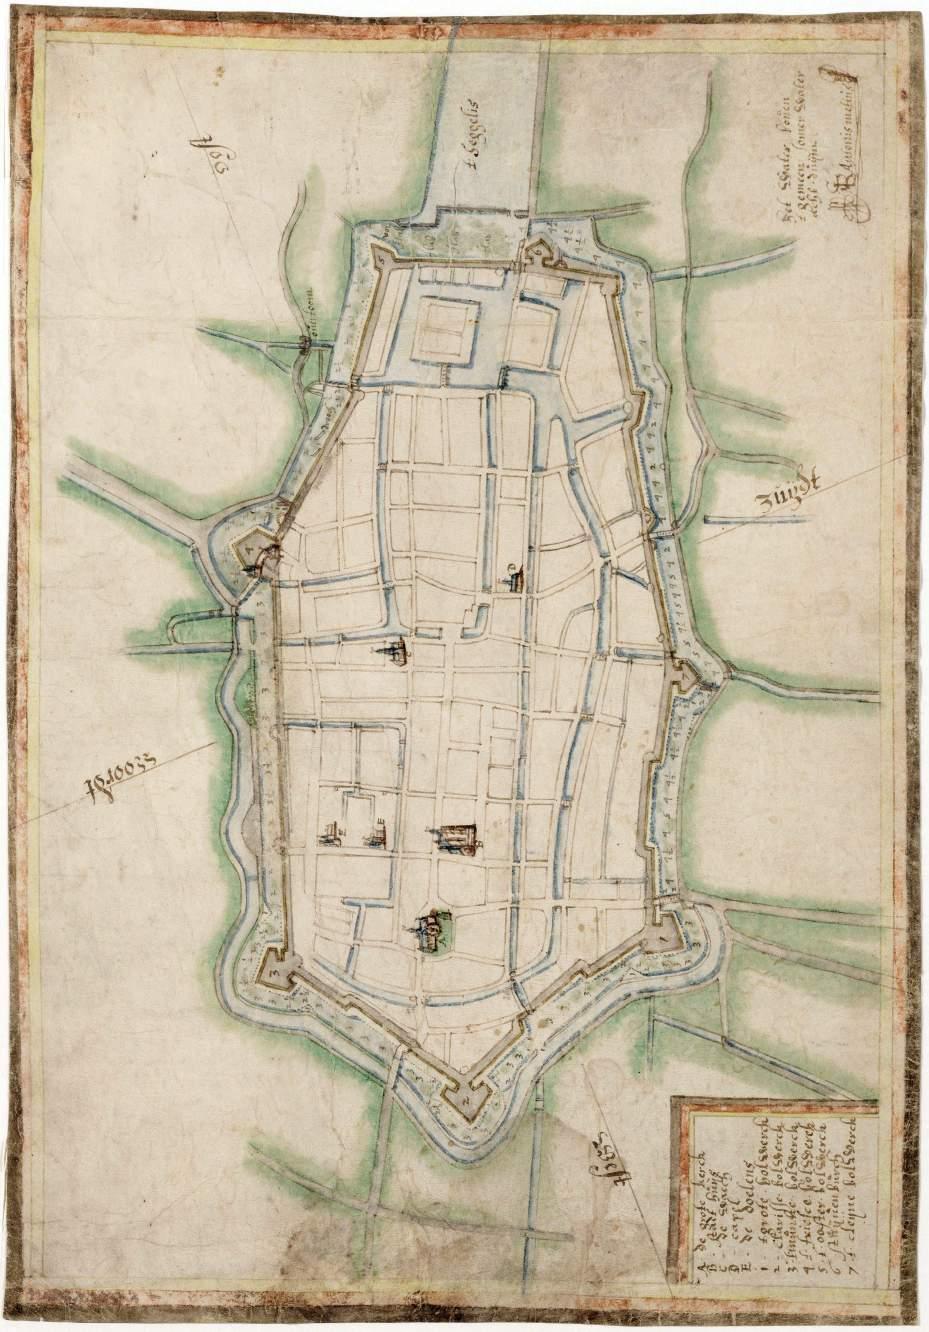 Plattegrond van Alkmaar met dieptepeilen van de singelgracht. (Antonius Metius, circa 1619).